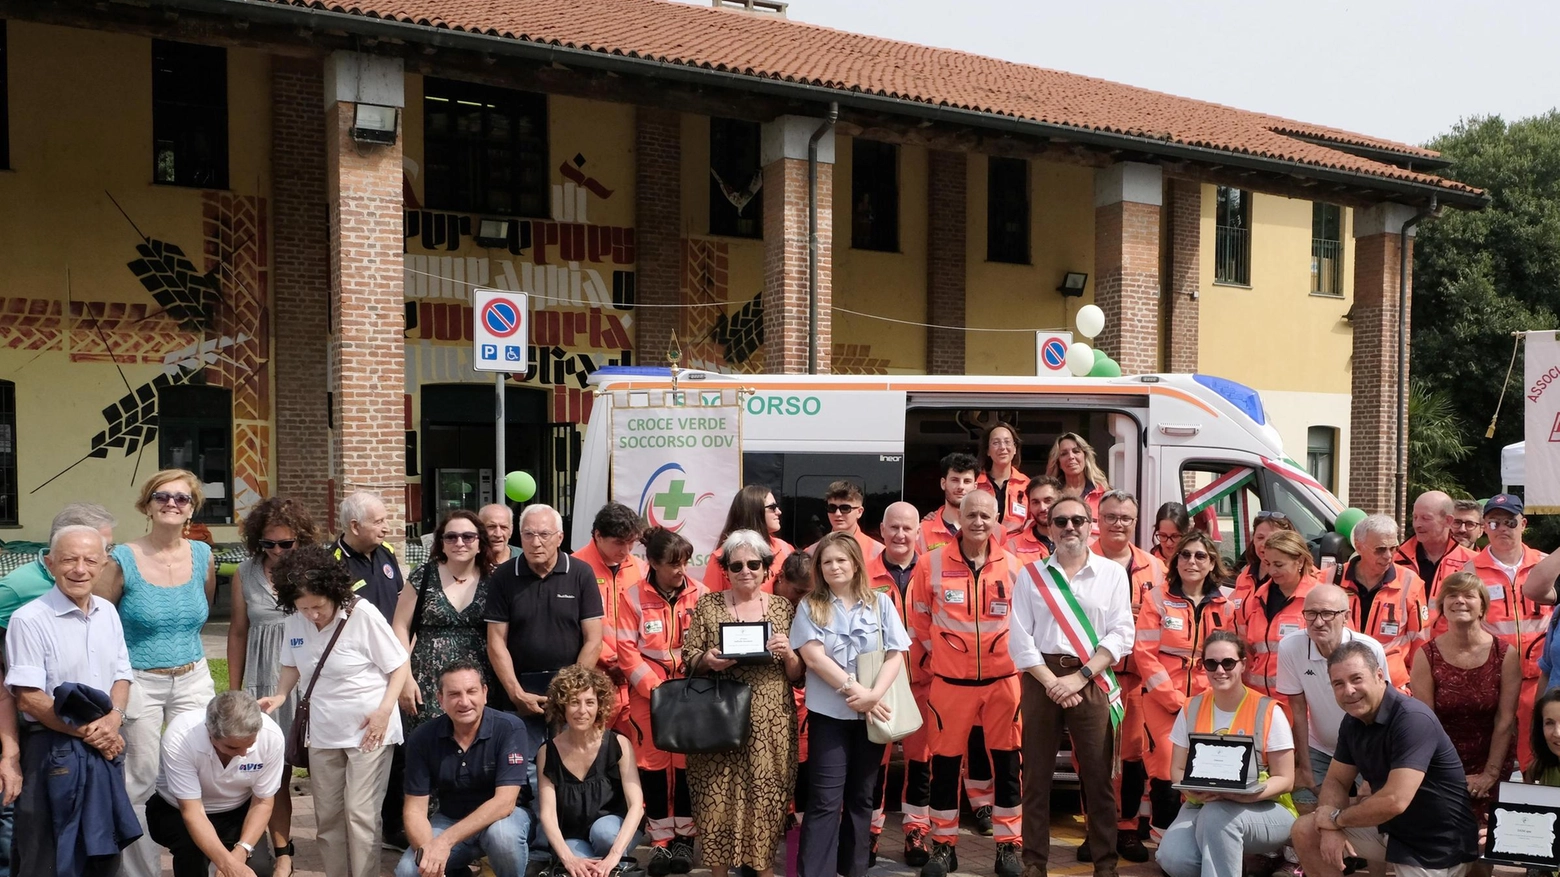 La Croce verde soccorso inaugura la terza ambulanza: "Coroniamo un grande sogno"